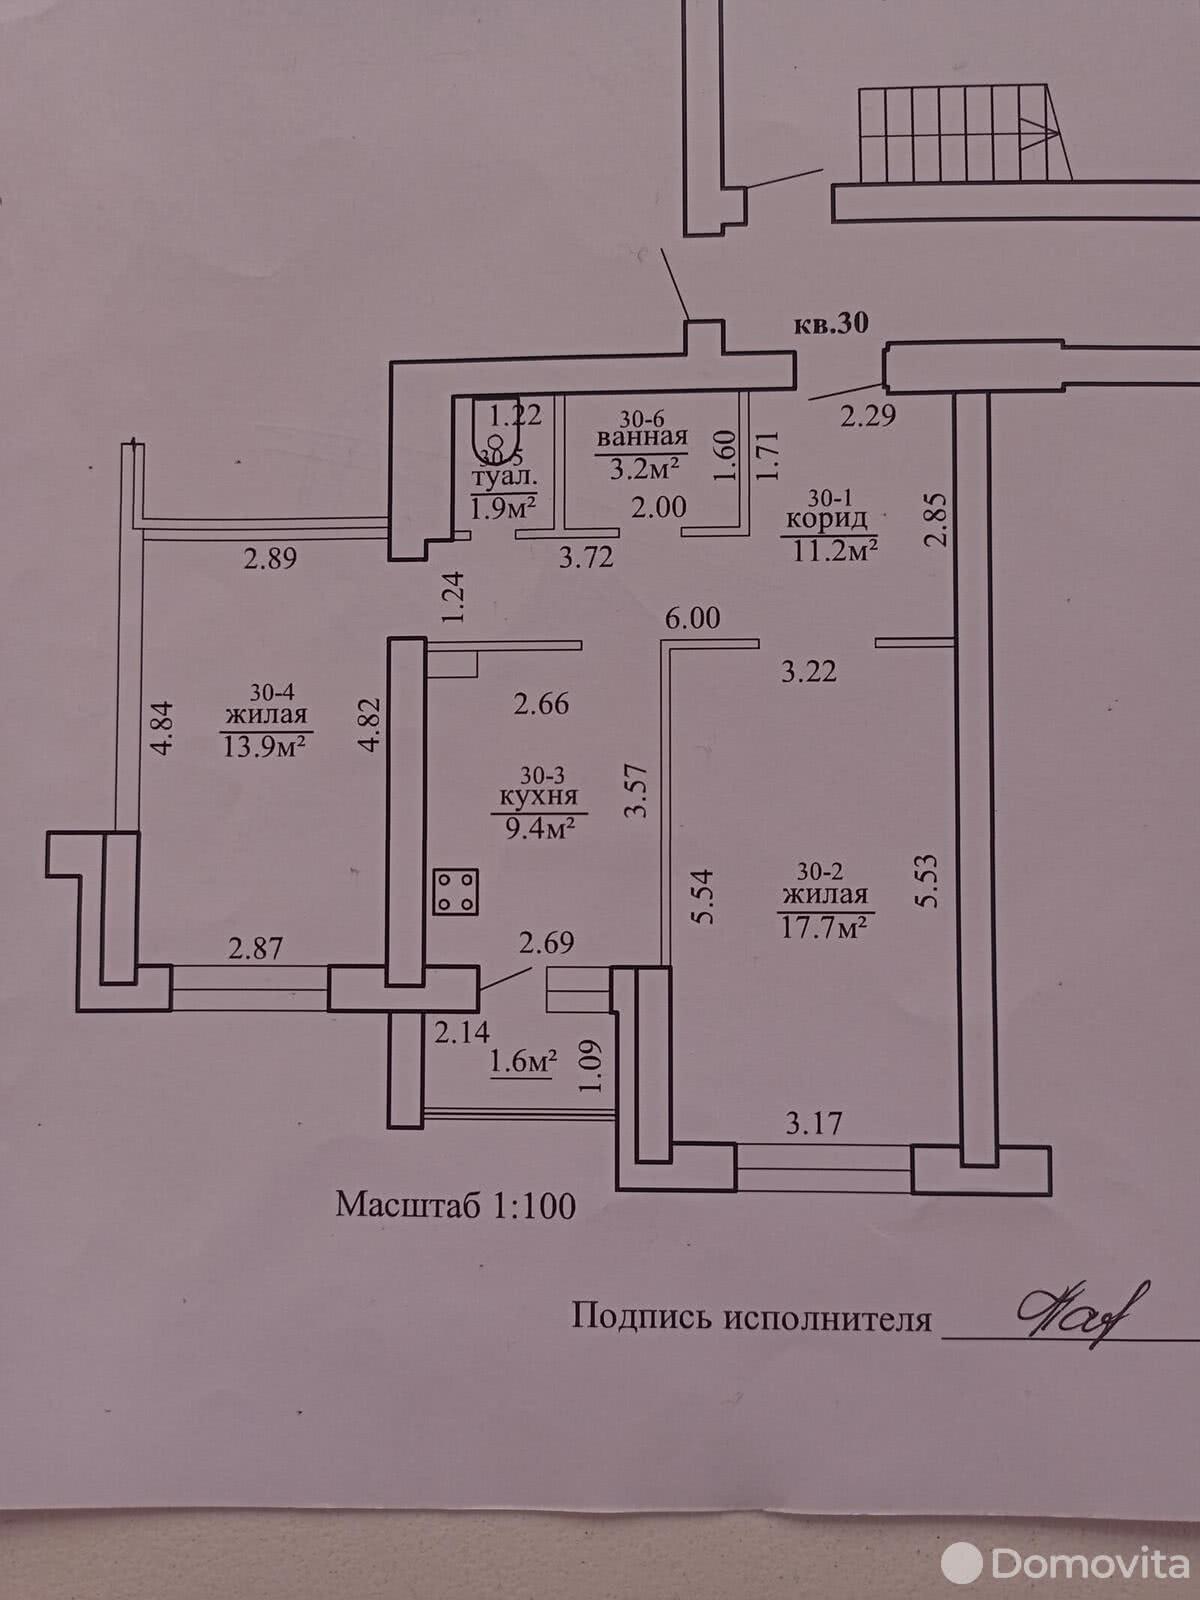 Цена продажи квартиры, Гродно, ул. Огинского, д. 6А